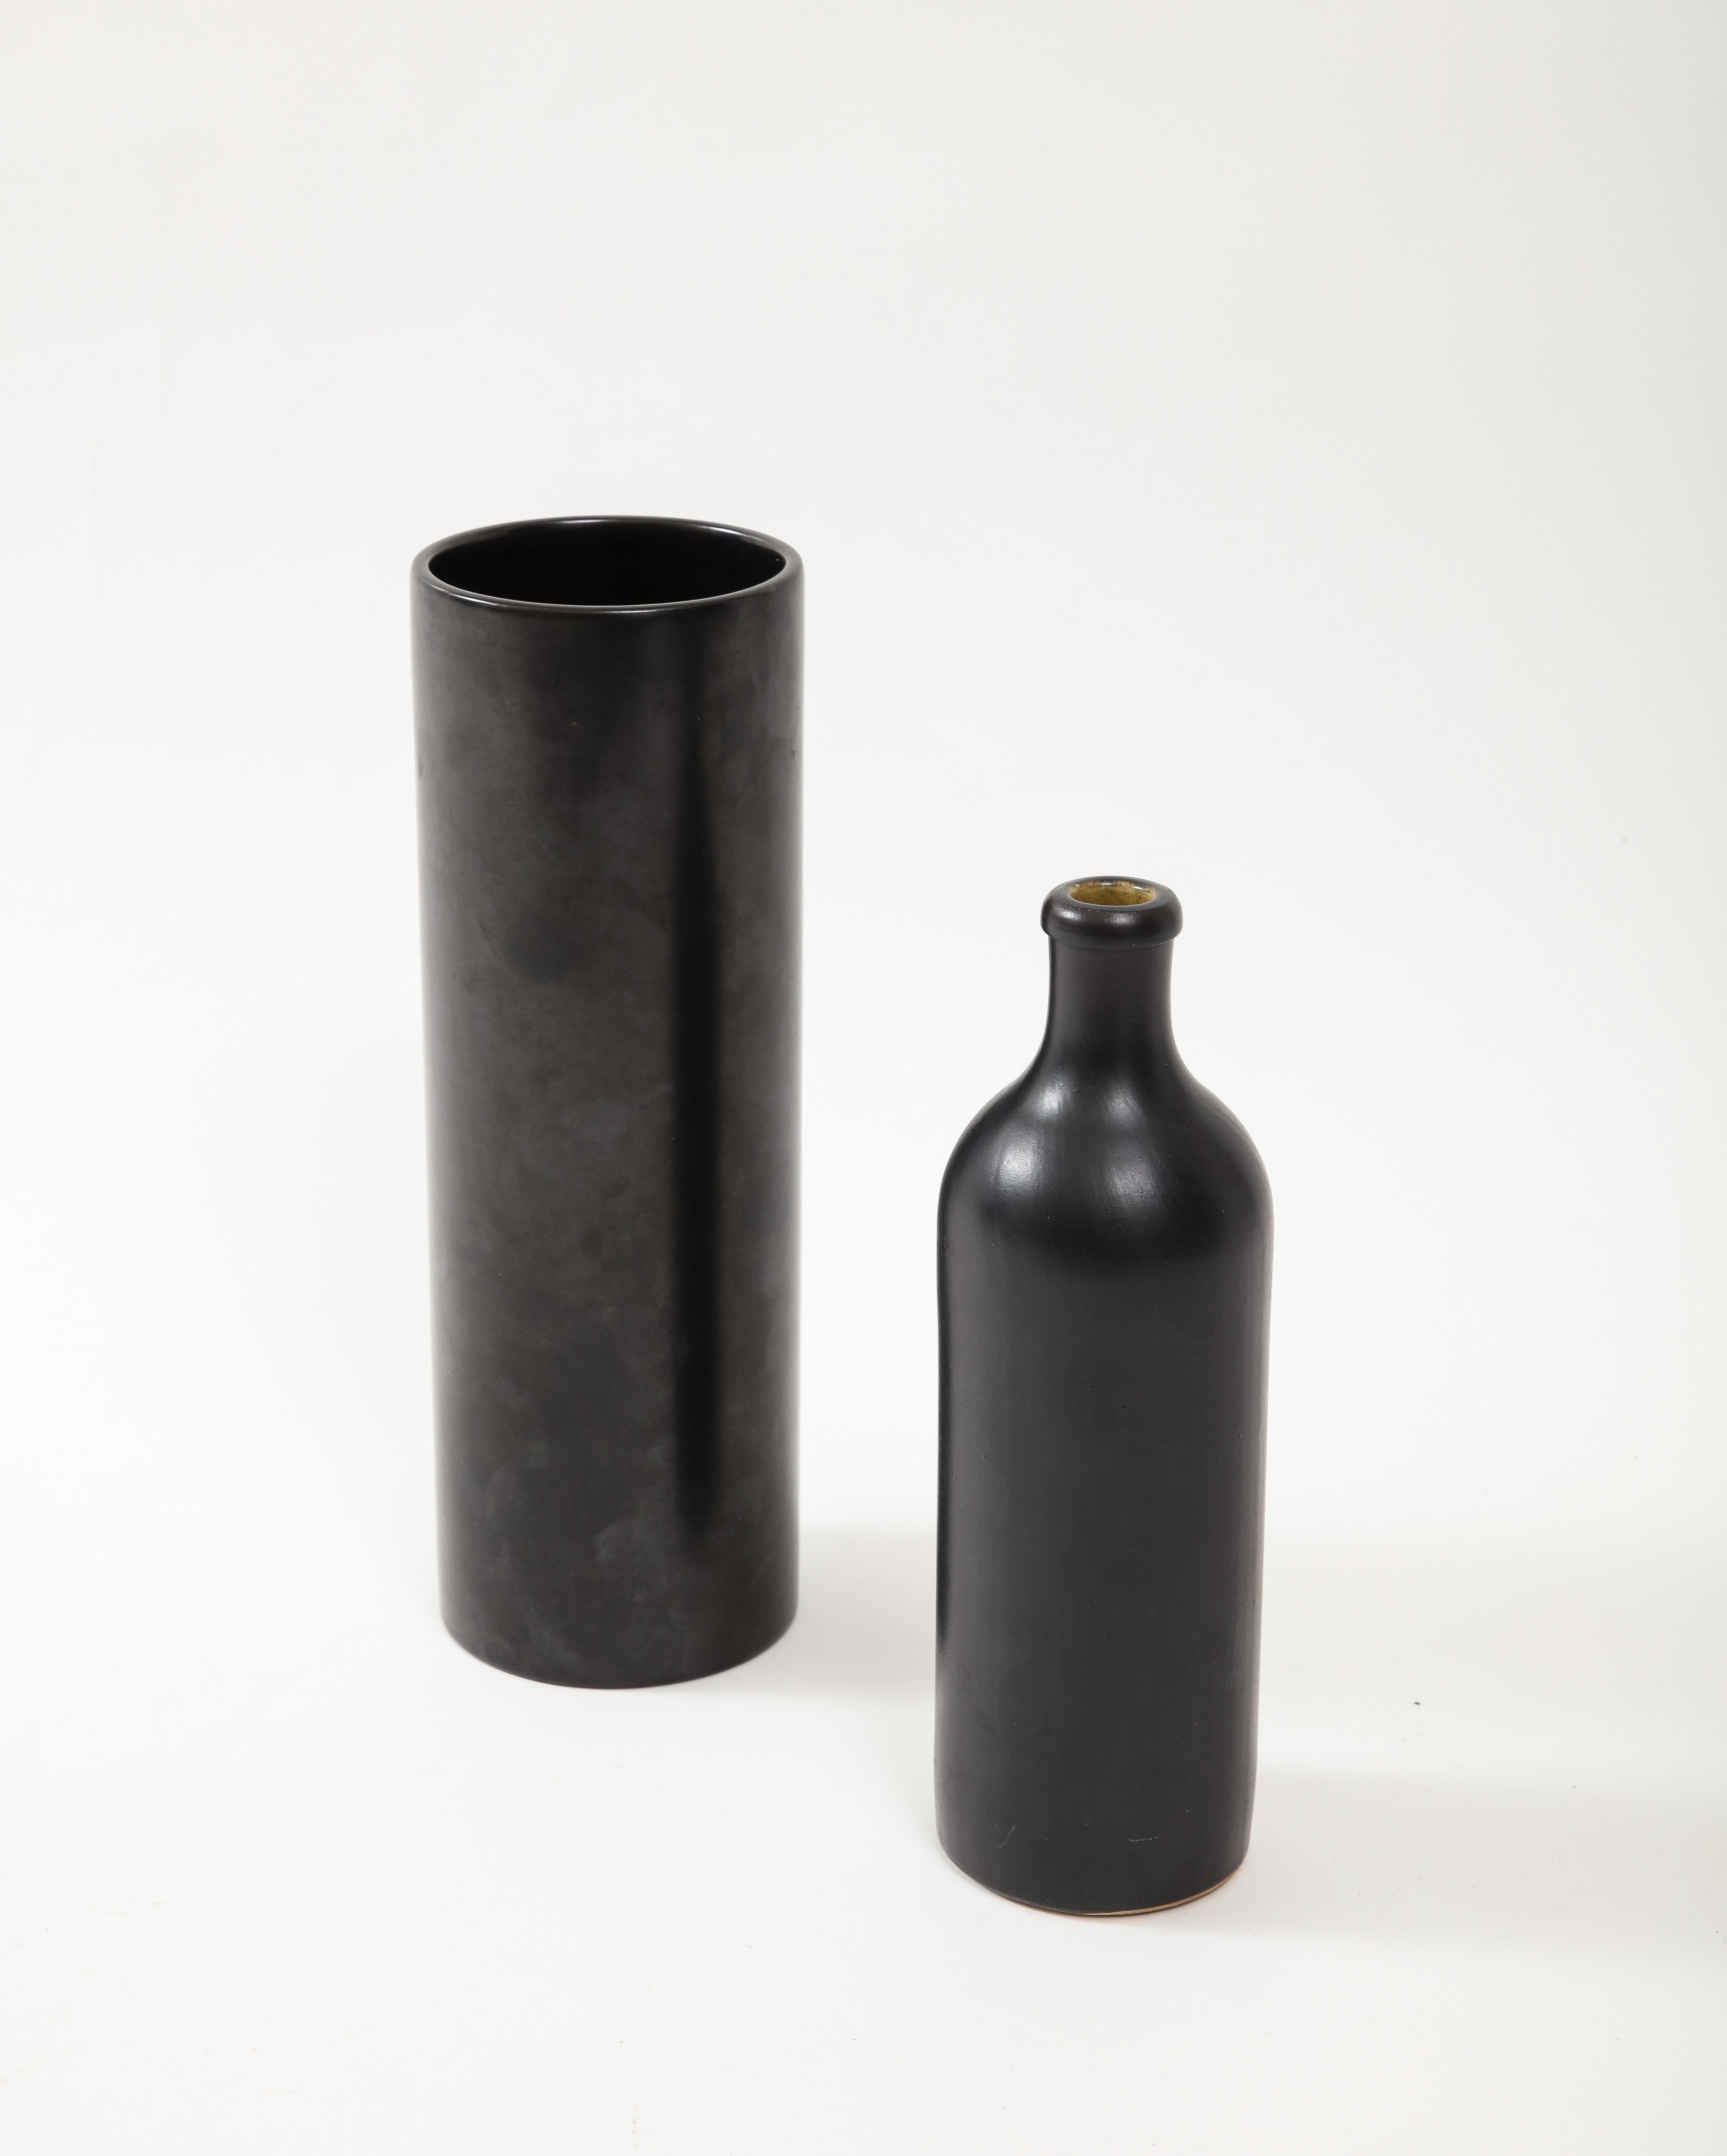 Large Georges Jouve Style Period Black Matte Vase, France, c. 1950 For Sale 1